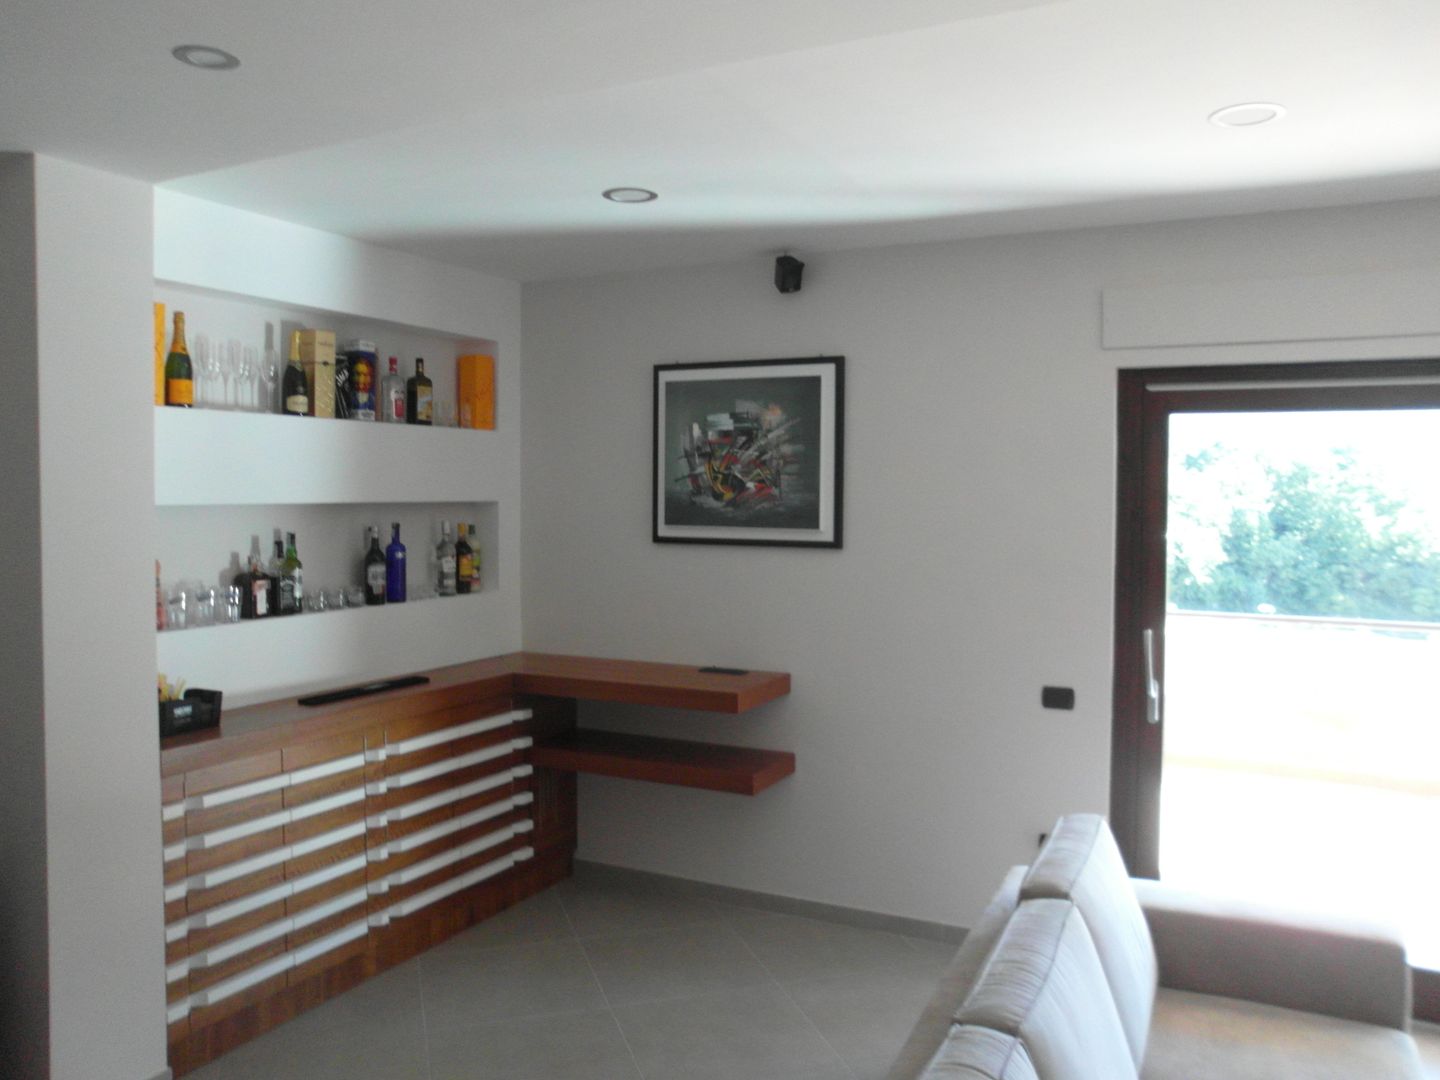 ABITAZIONE C.M., Luigi Nevola Architetto Luigi Nevola Architetto Minimalist living room Accessories & decoration